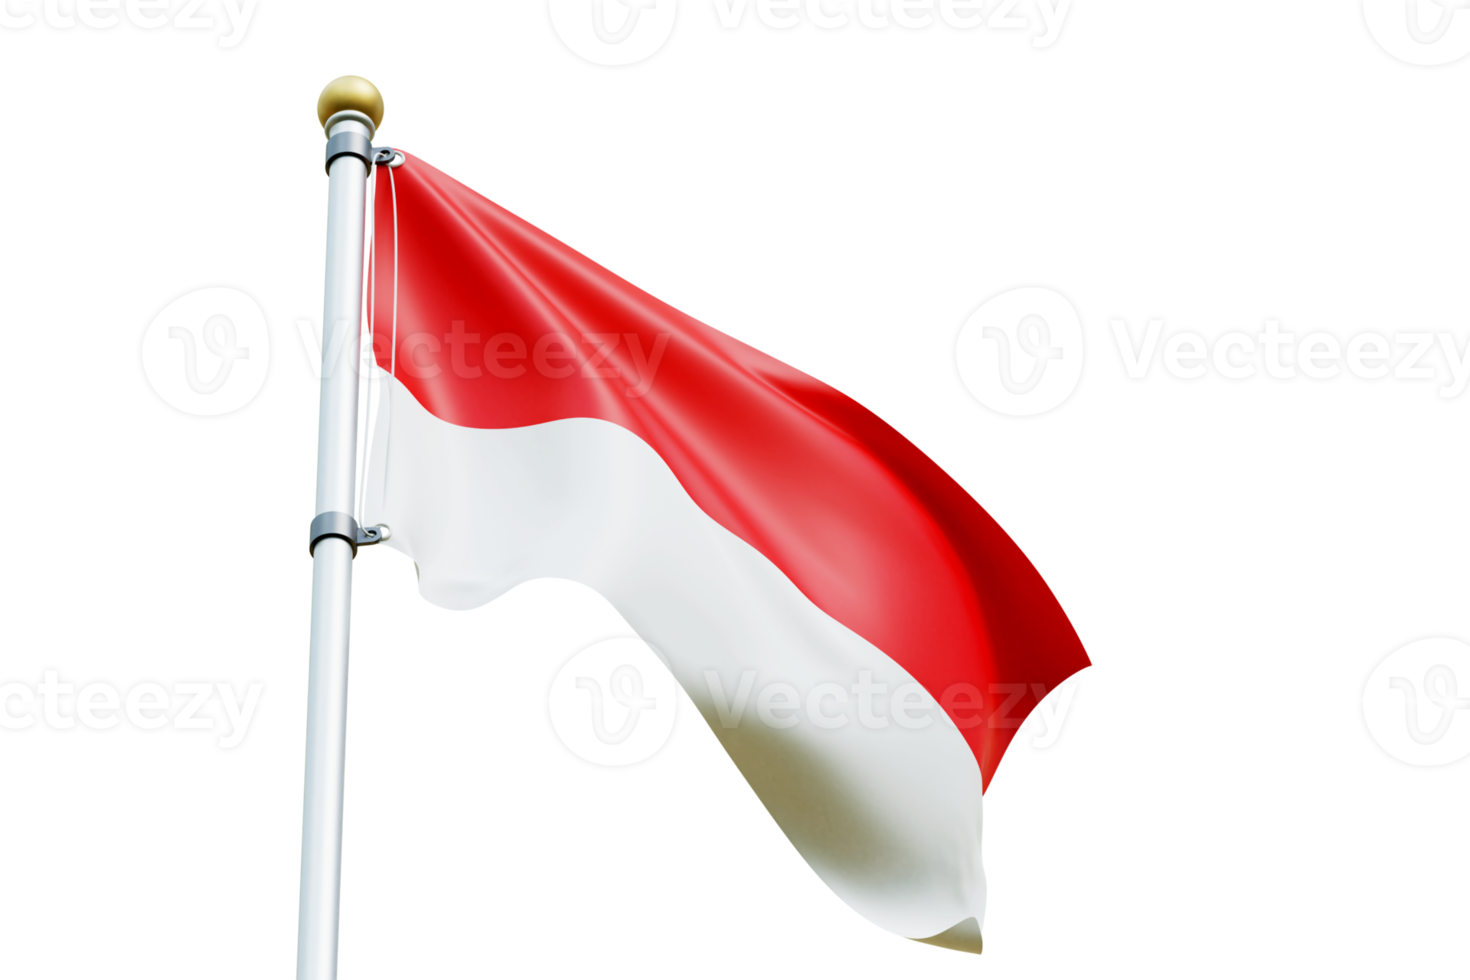 drapeau de l'Indonésie rendu 3d png